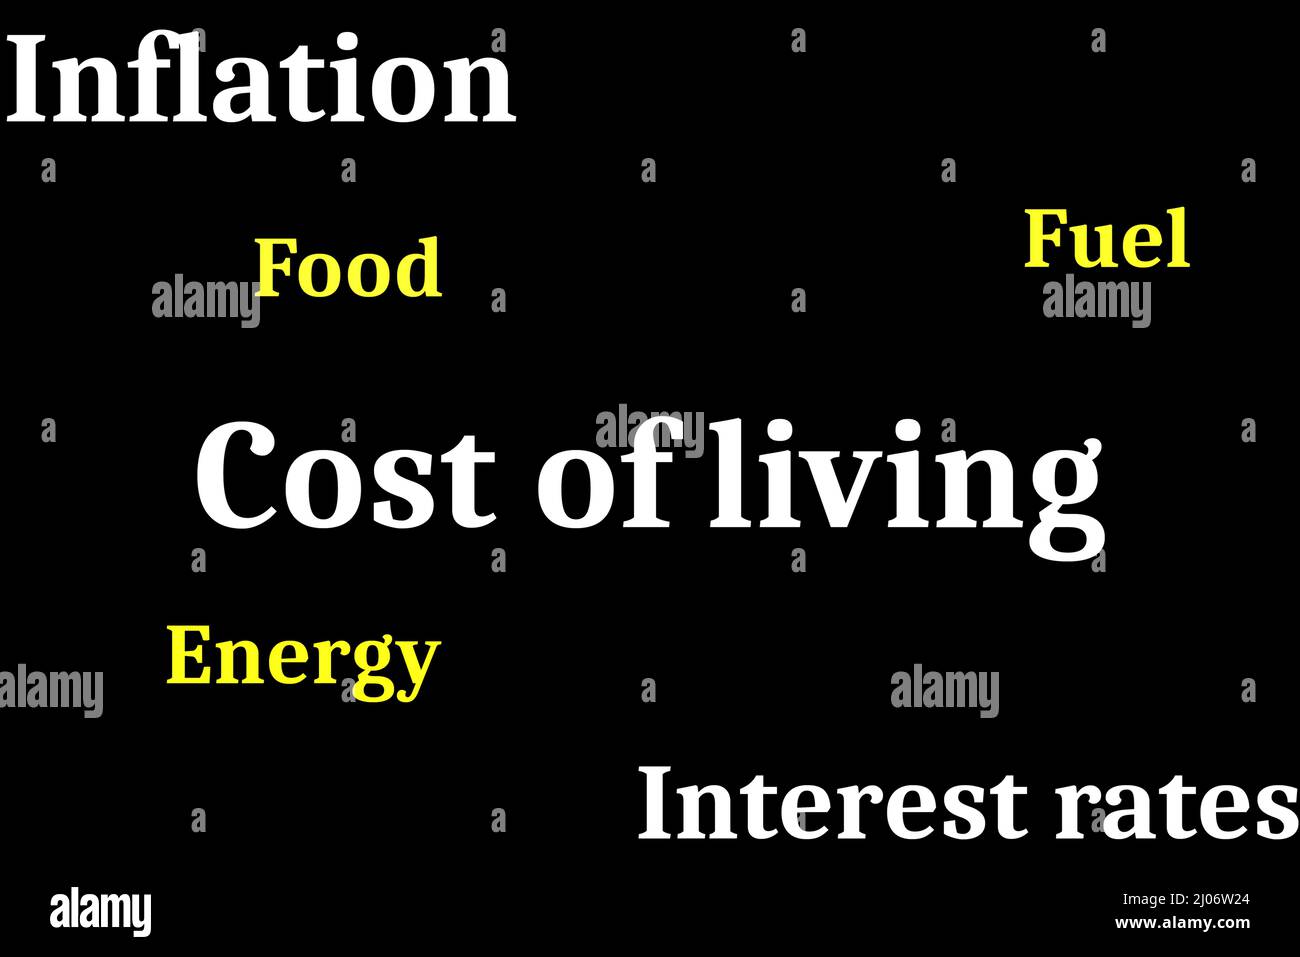 Costo de vida, inflación y tasas de interés en blanco con combustible, alimentos y energía en amarillo sobre fondo negro. Concepto de costo de vida Foto de stock